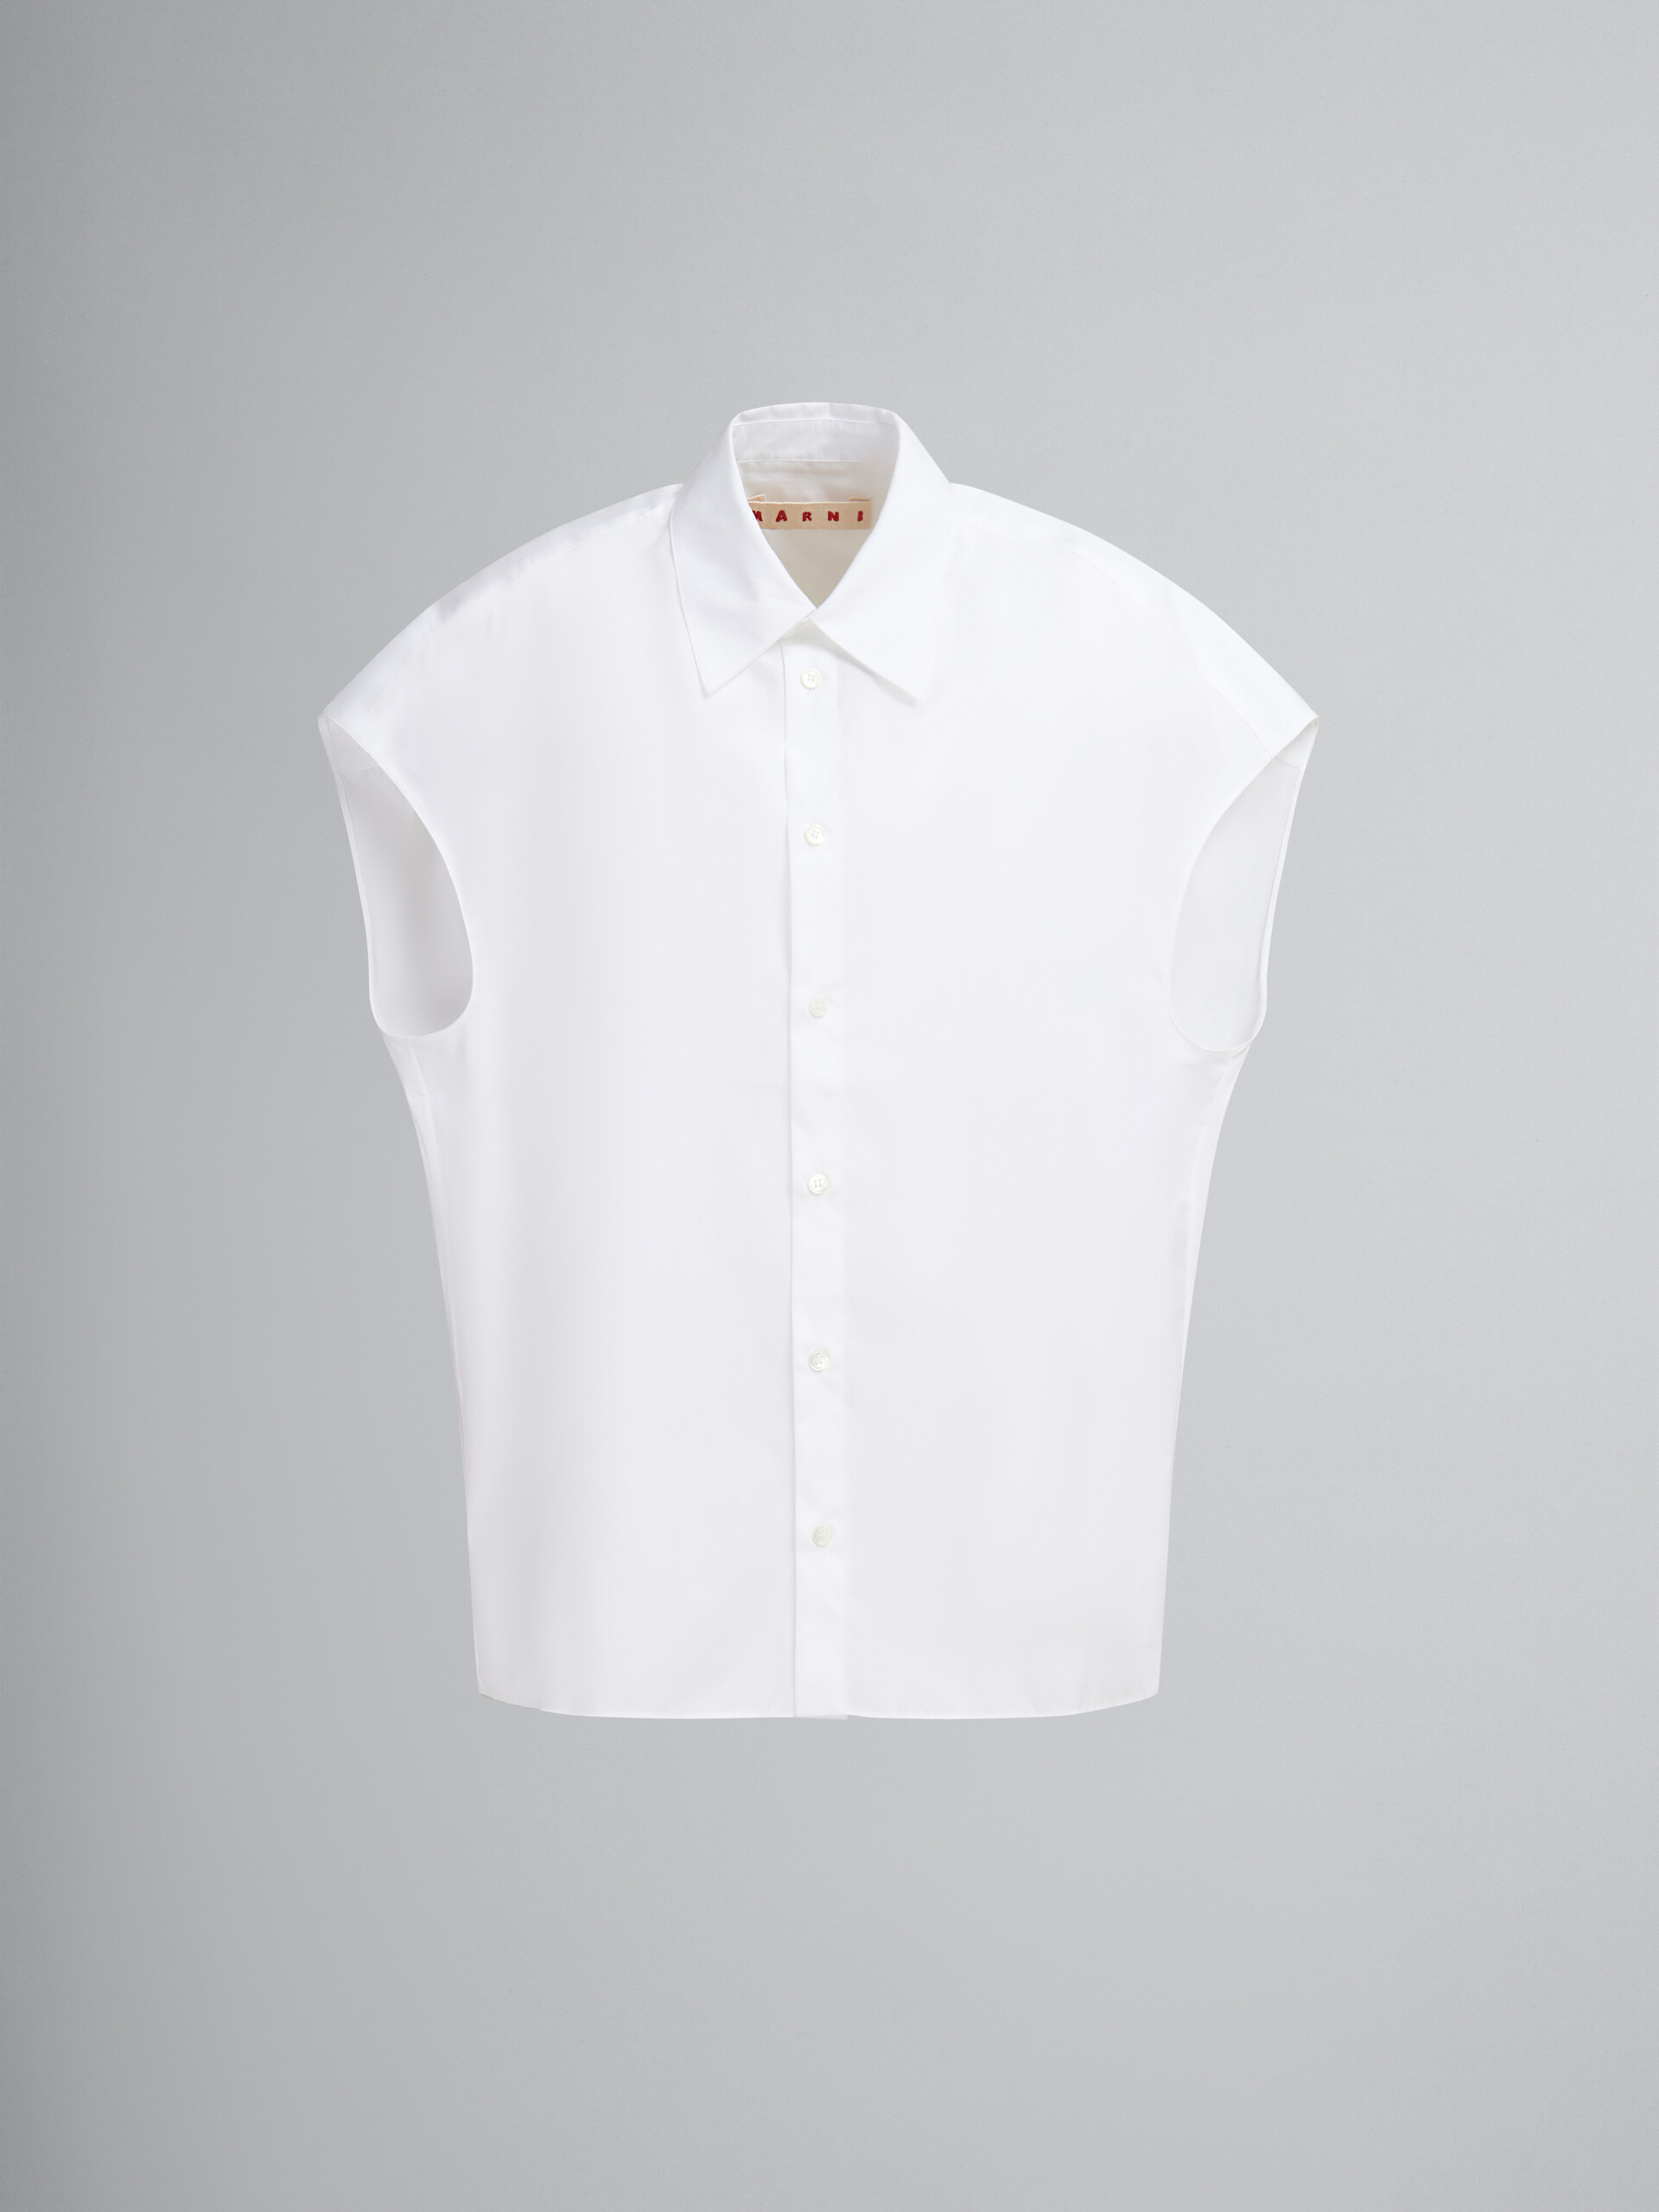 Camisa de popelina blanca cocoon - Camisas - Image 1